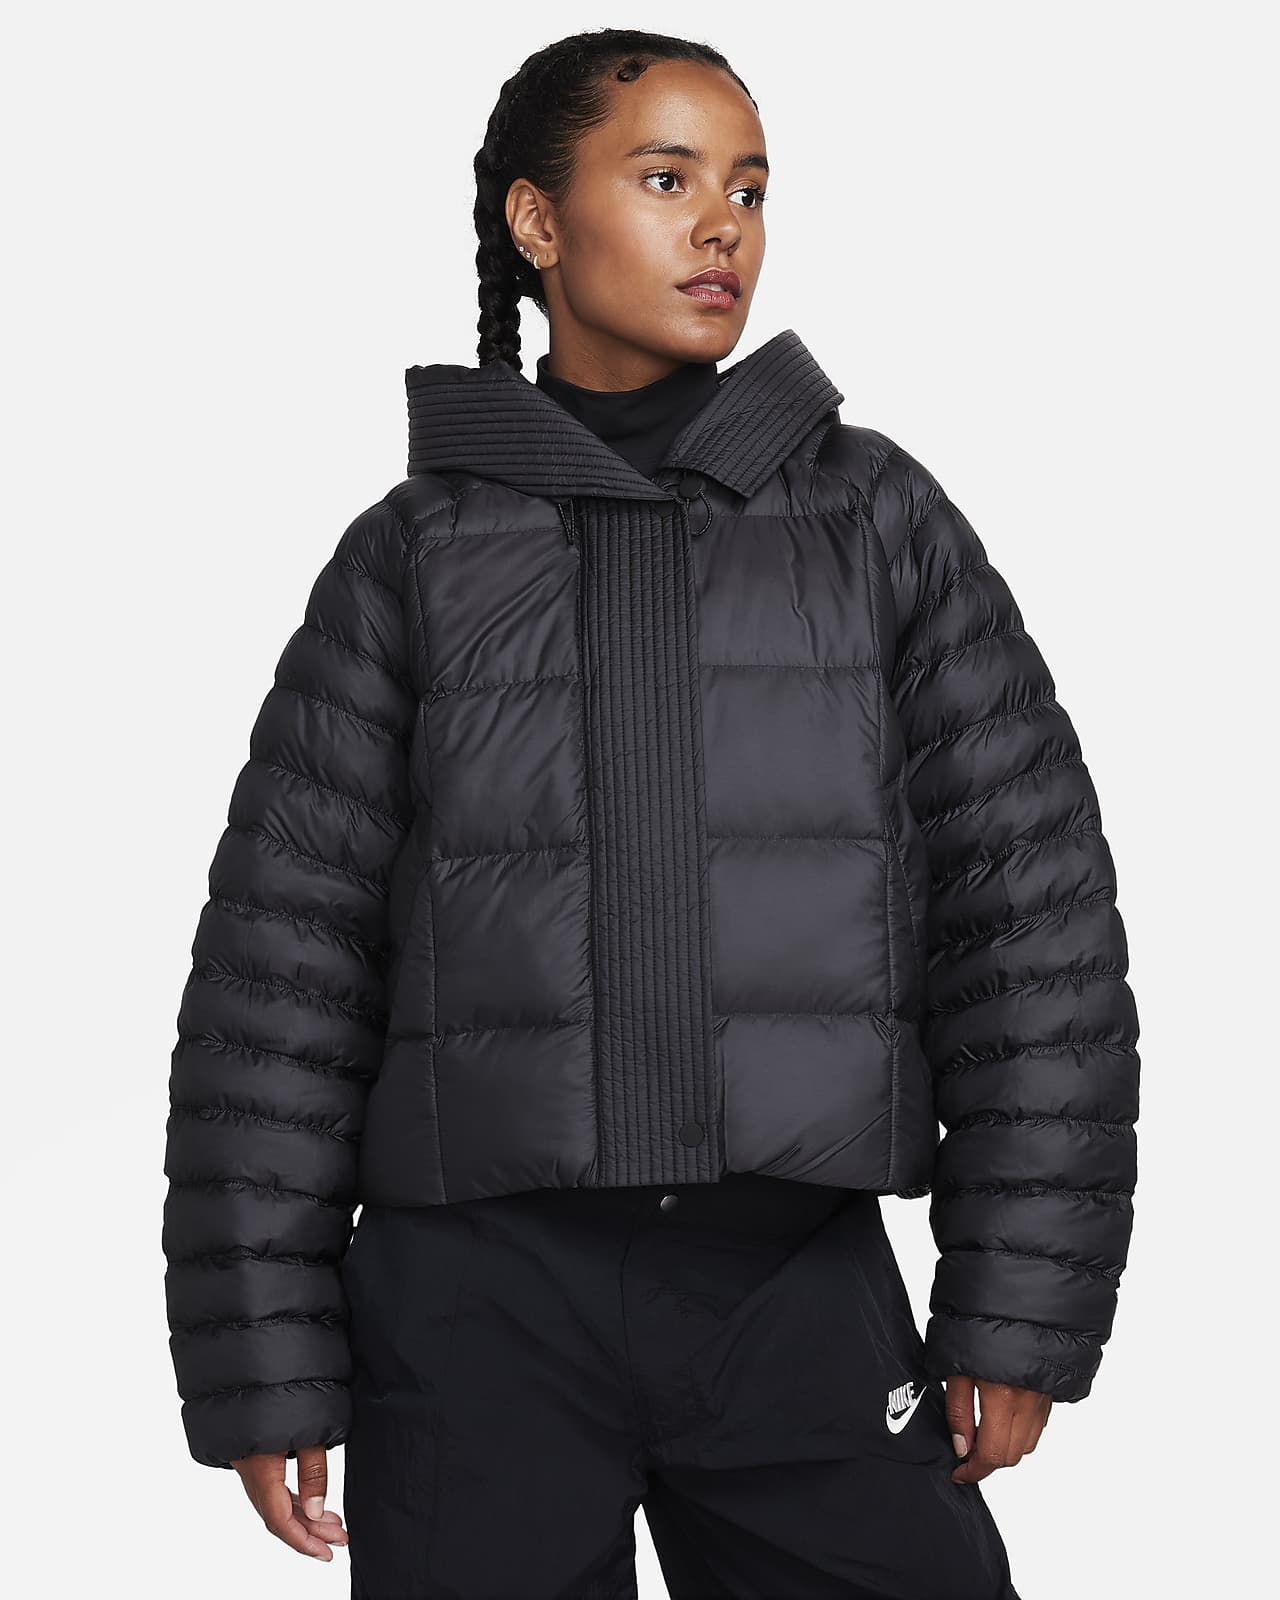 Nike Jacket Womens Small Black Swoosh Down Coat Hooded